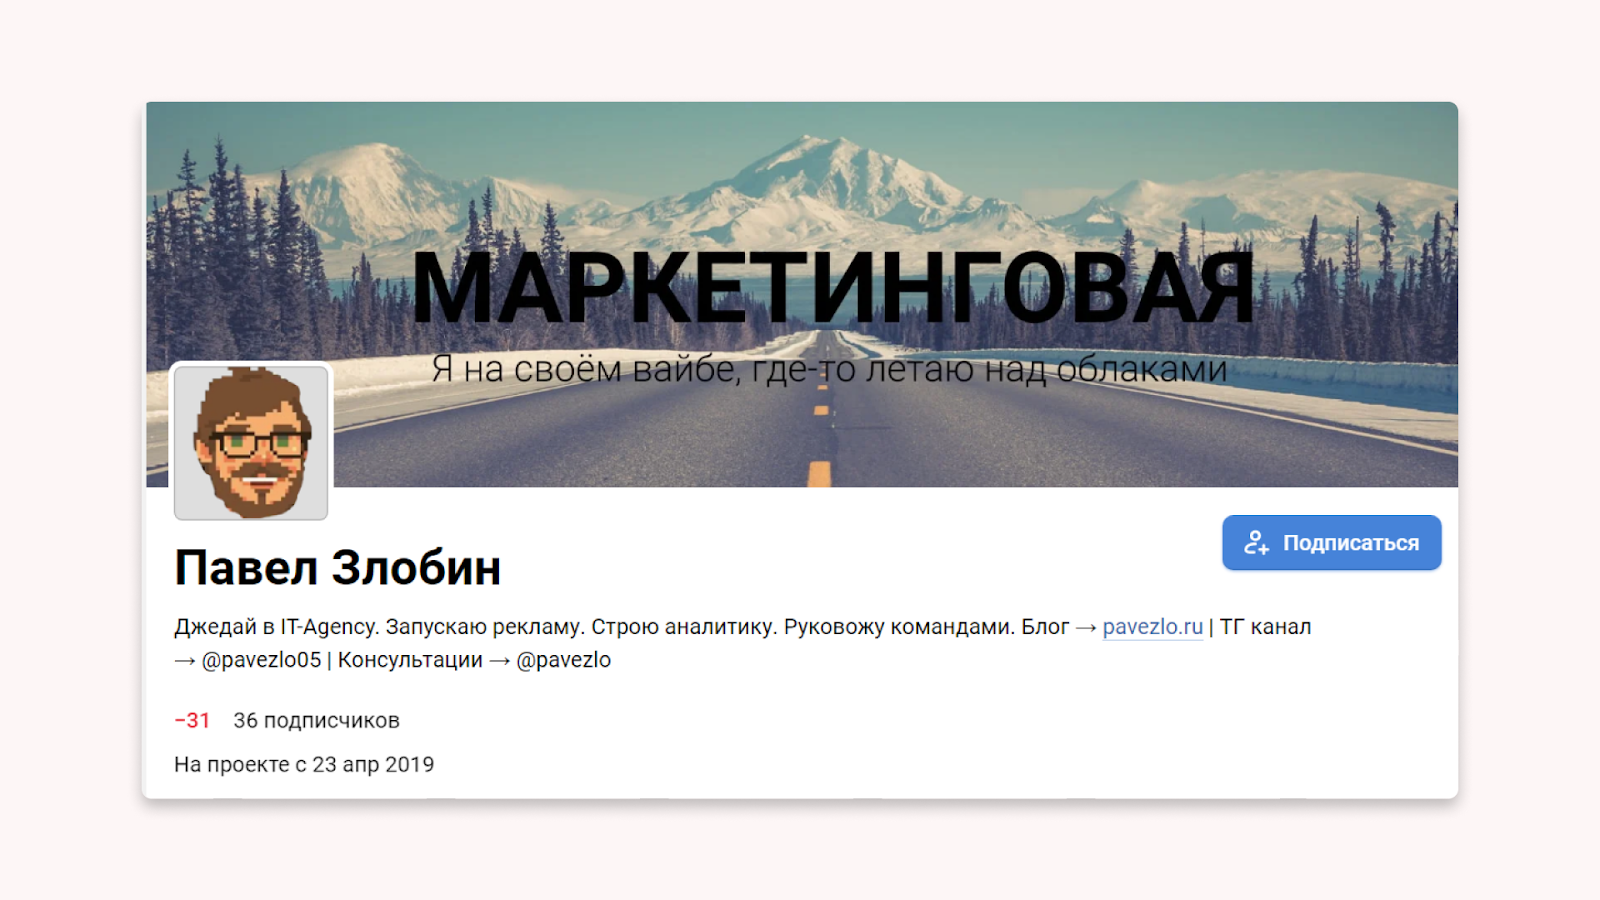 павел злобин маркетинговая на vc.ru